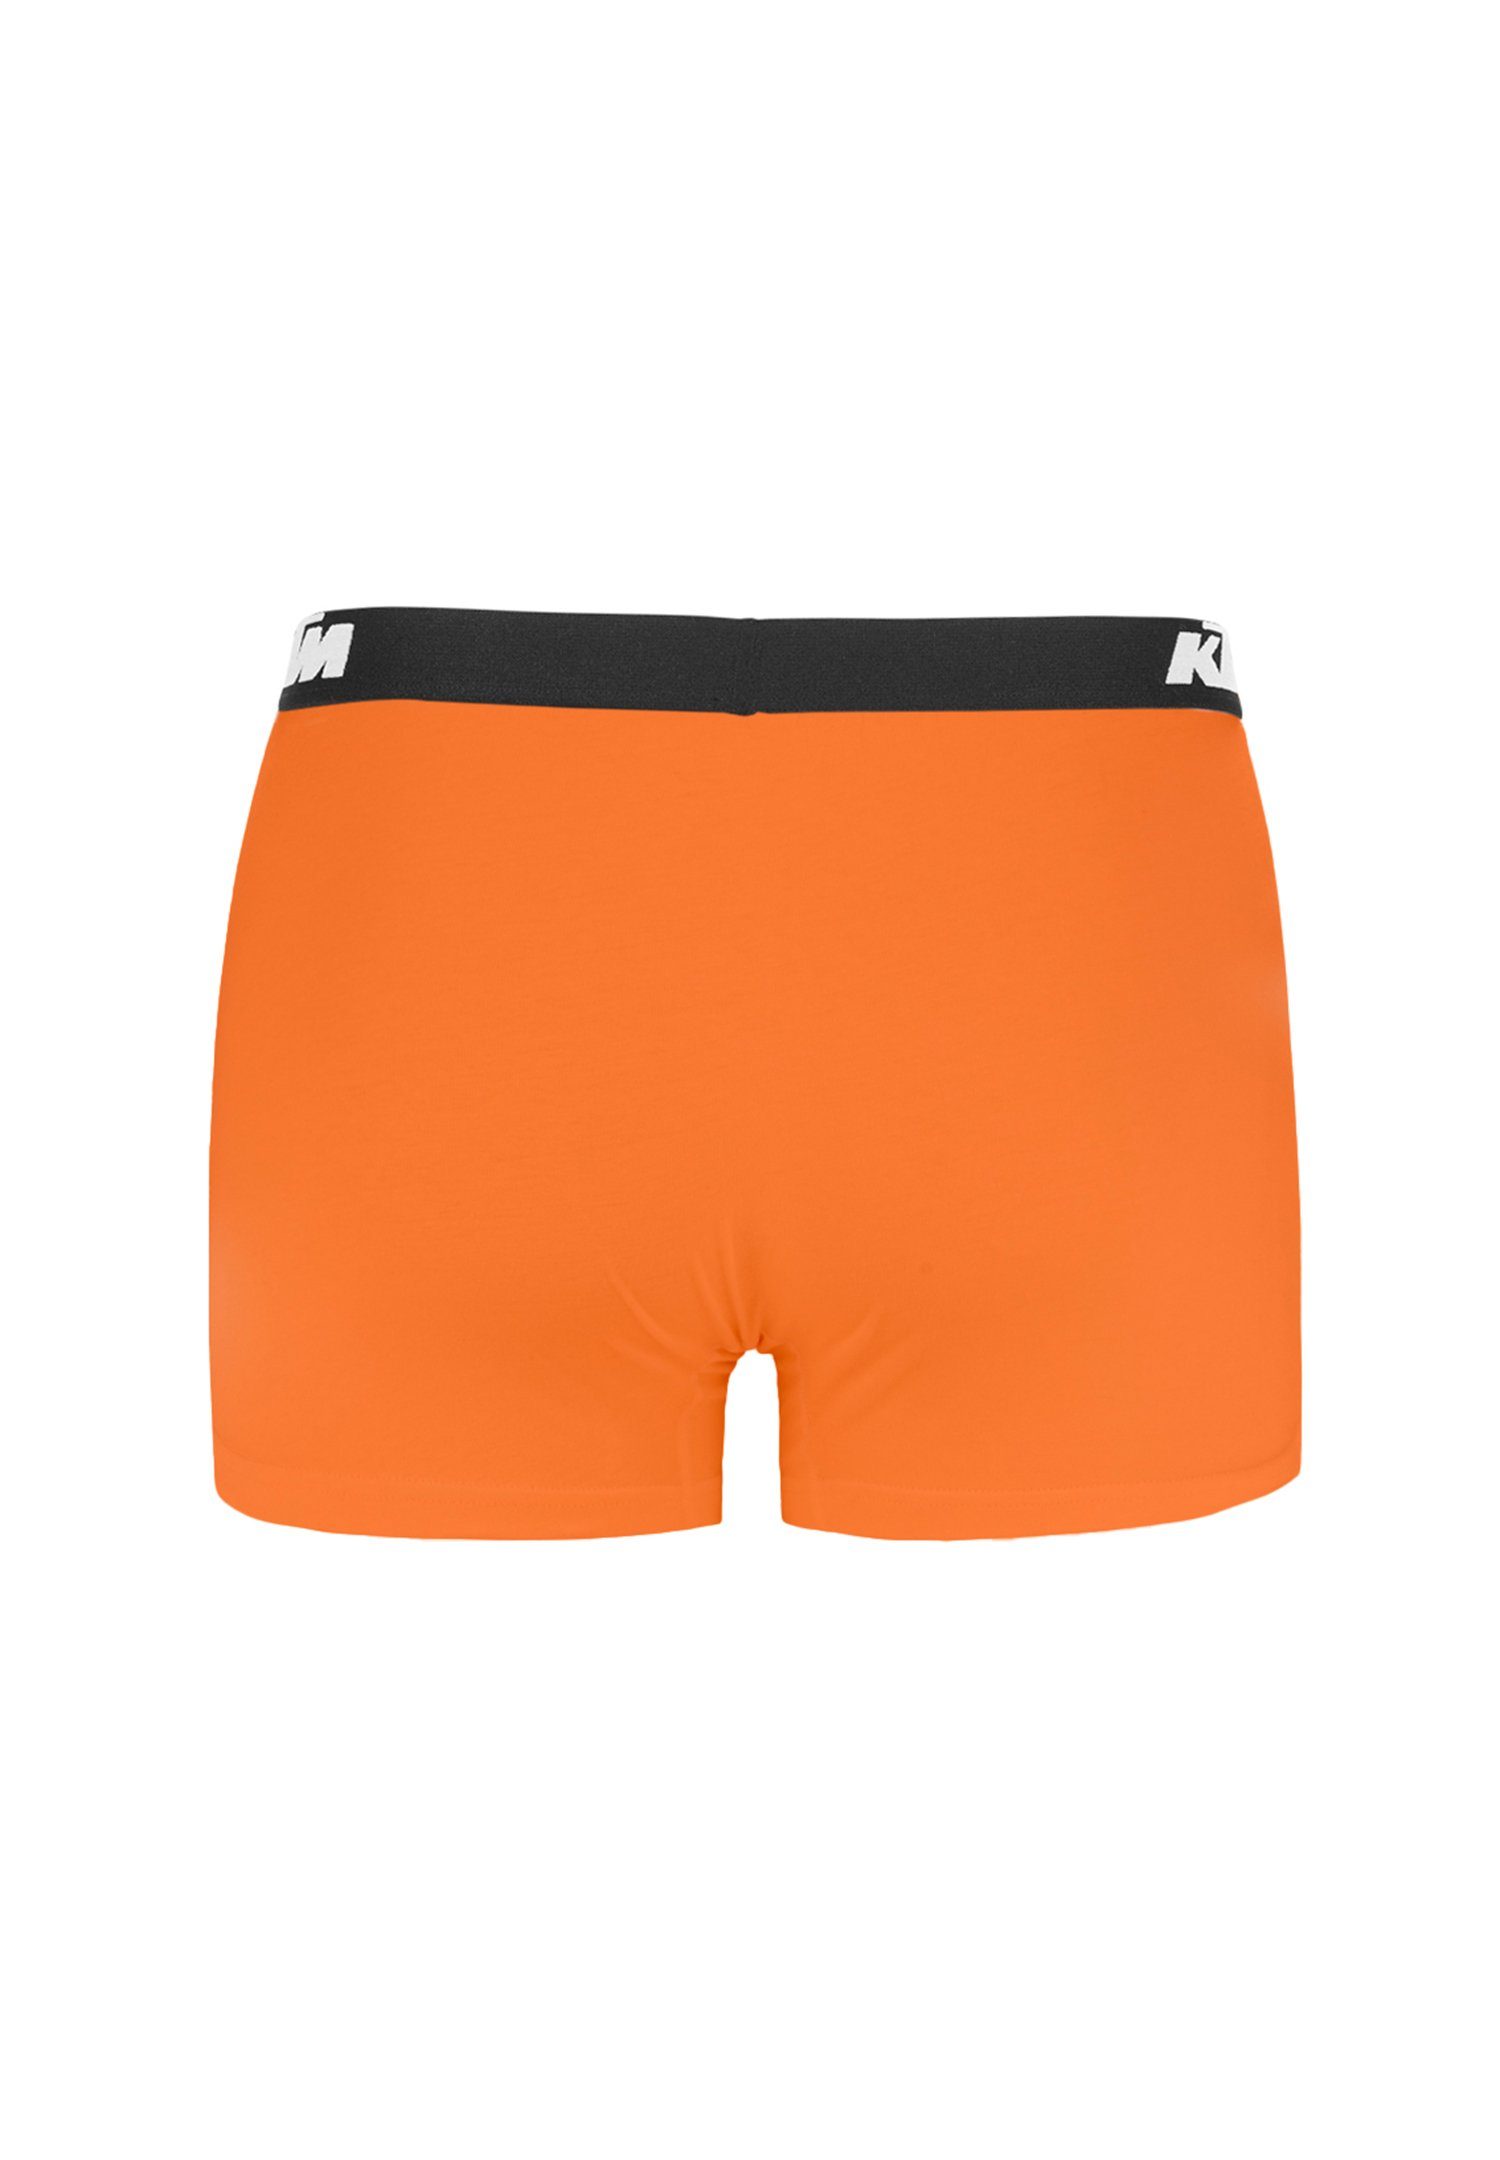 KTM (2-St) X2 / Light Boxer Pack Cotton Man Orange Grey Boxershorts